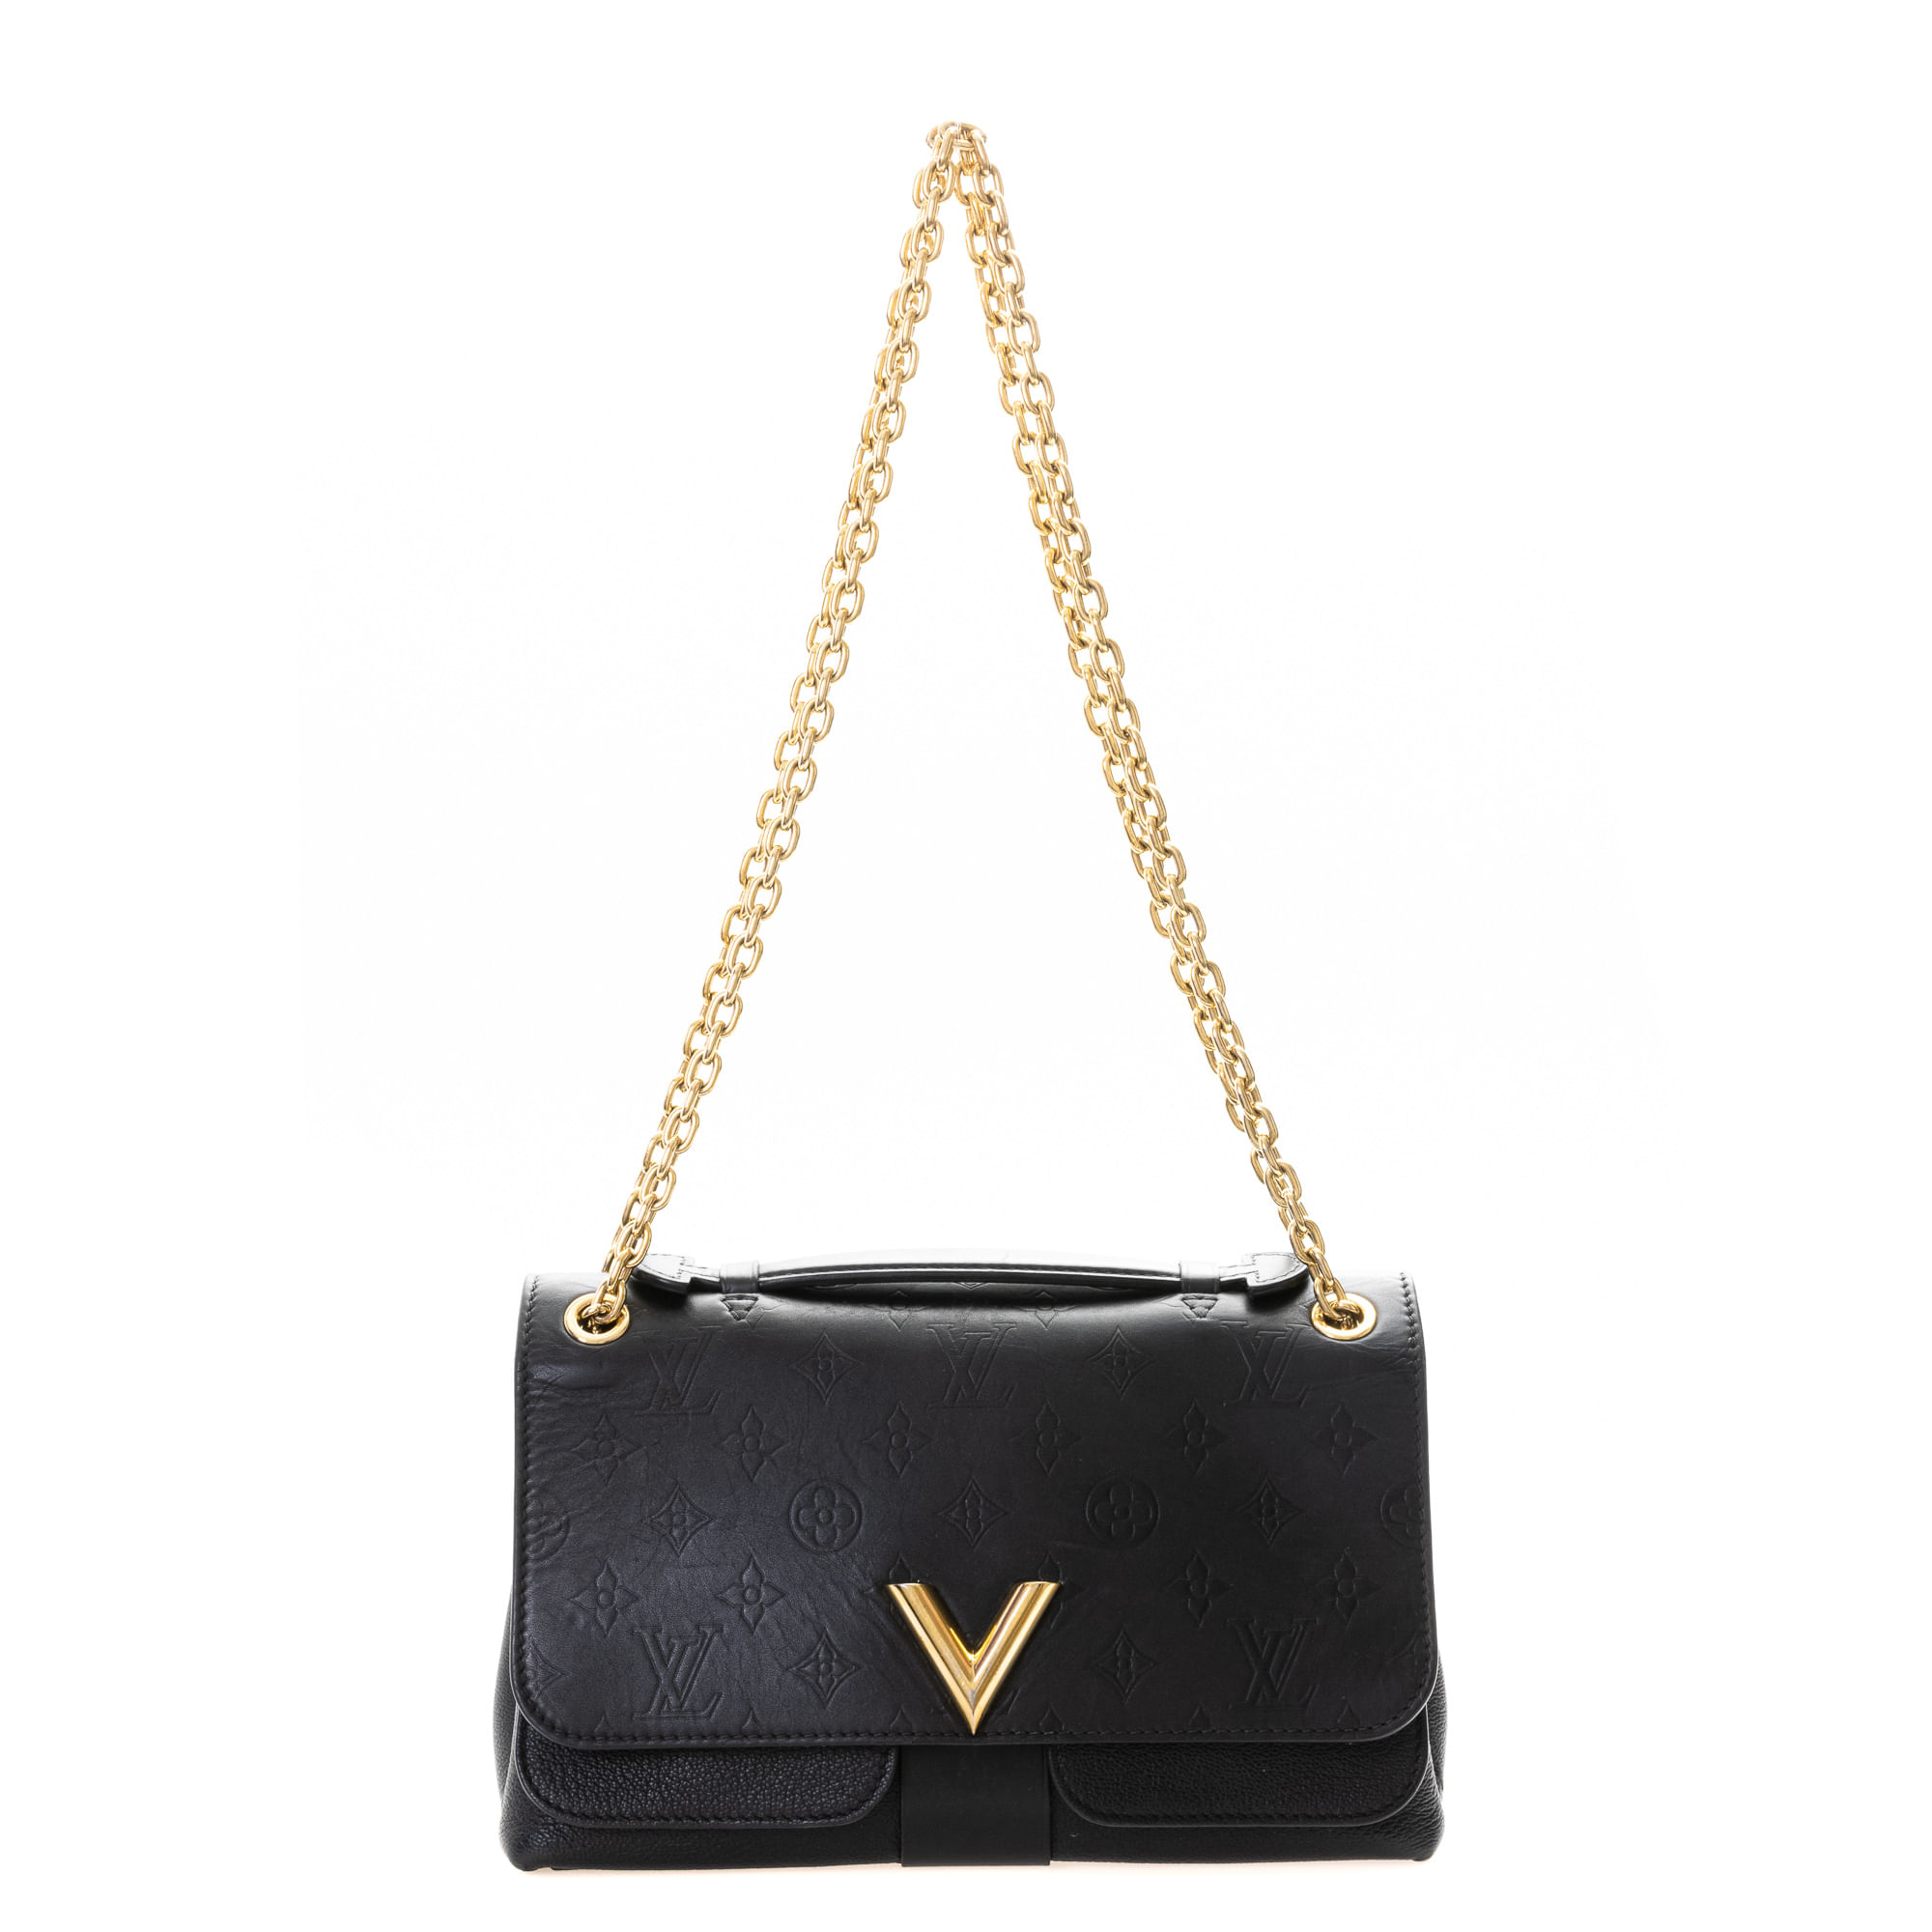 Bolsa Louis Vuitton Very Bag Preta